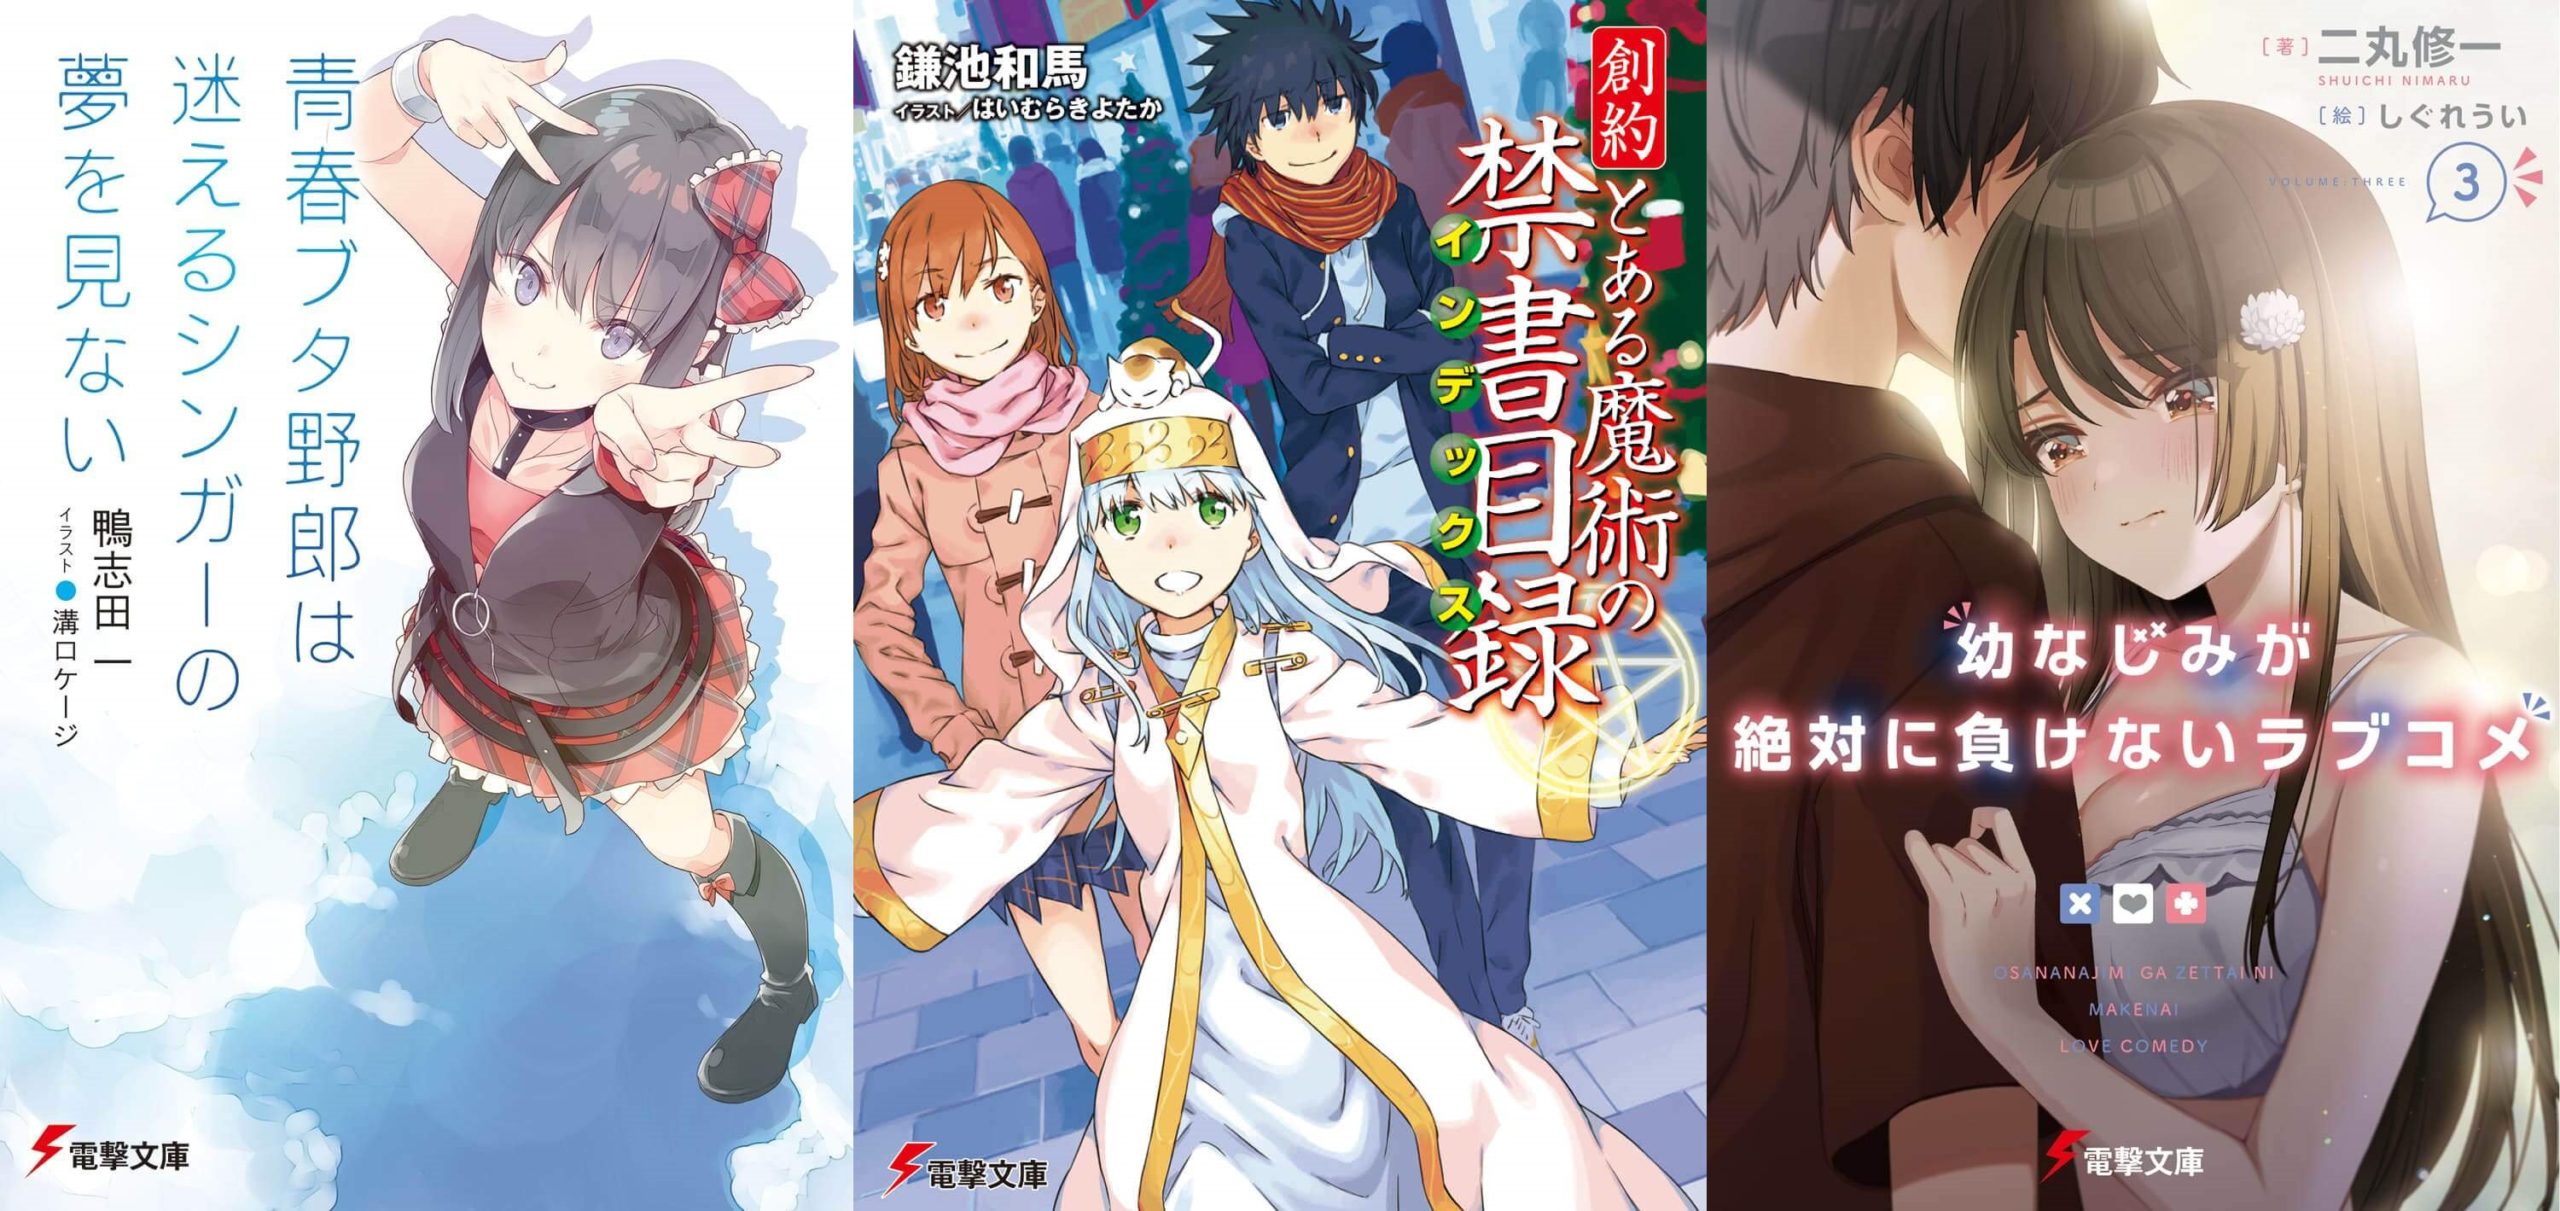 Franquia de Seishun Buta Yarou ganha 2 novos mangás! - Notícia de Animes